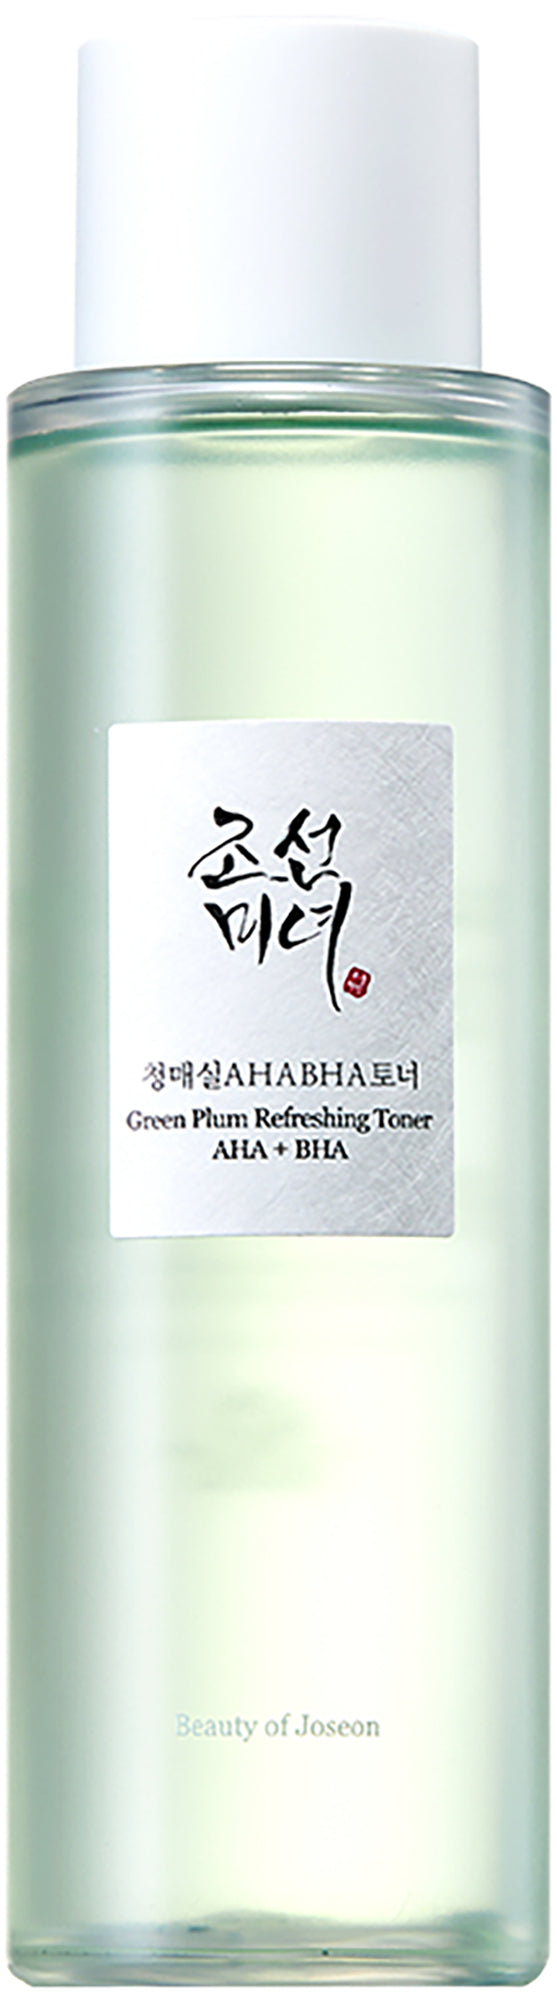 Beauty of Joseon Green Plum Refreshing Toner 150 ml